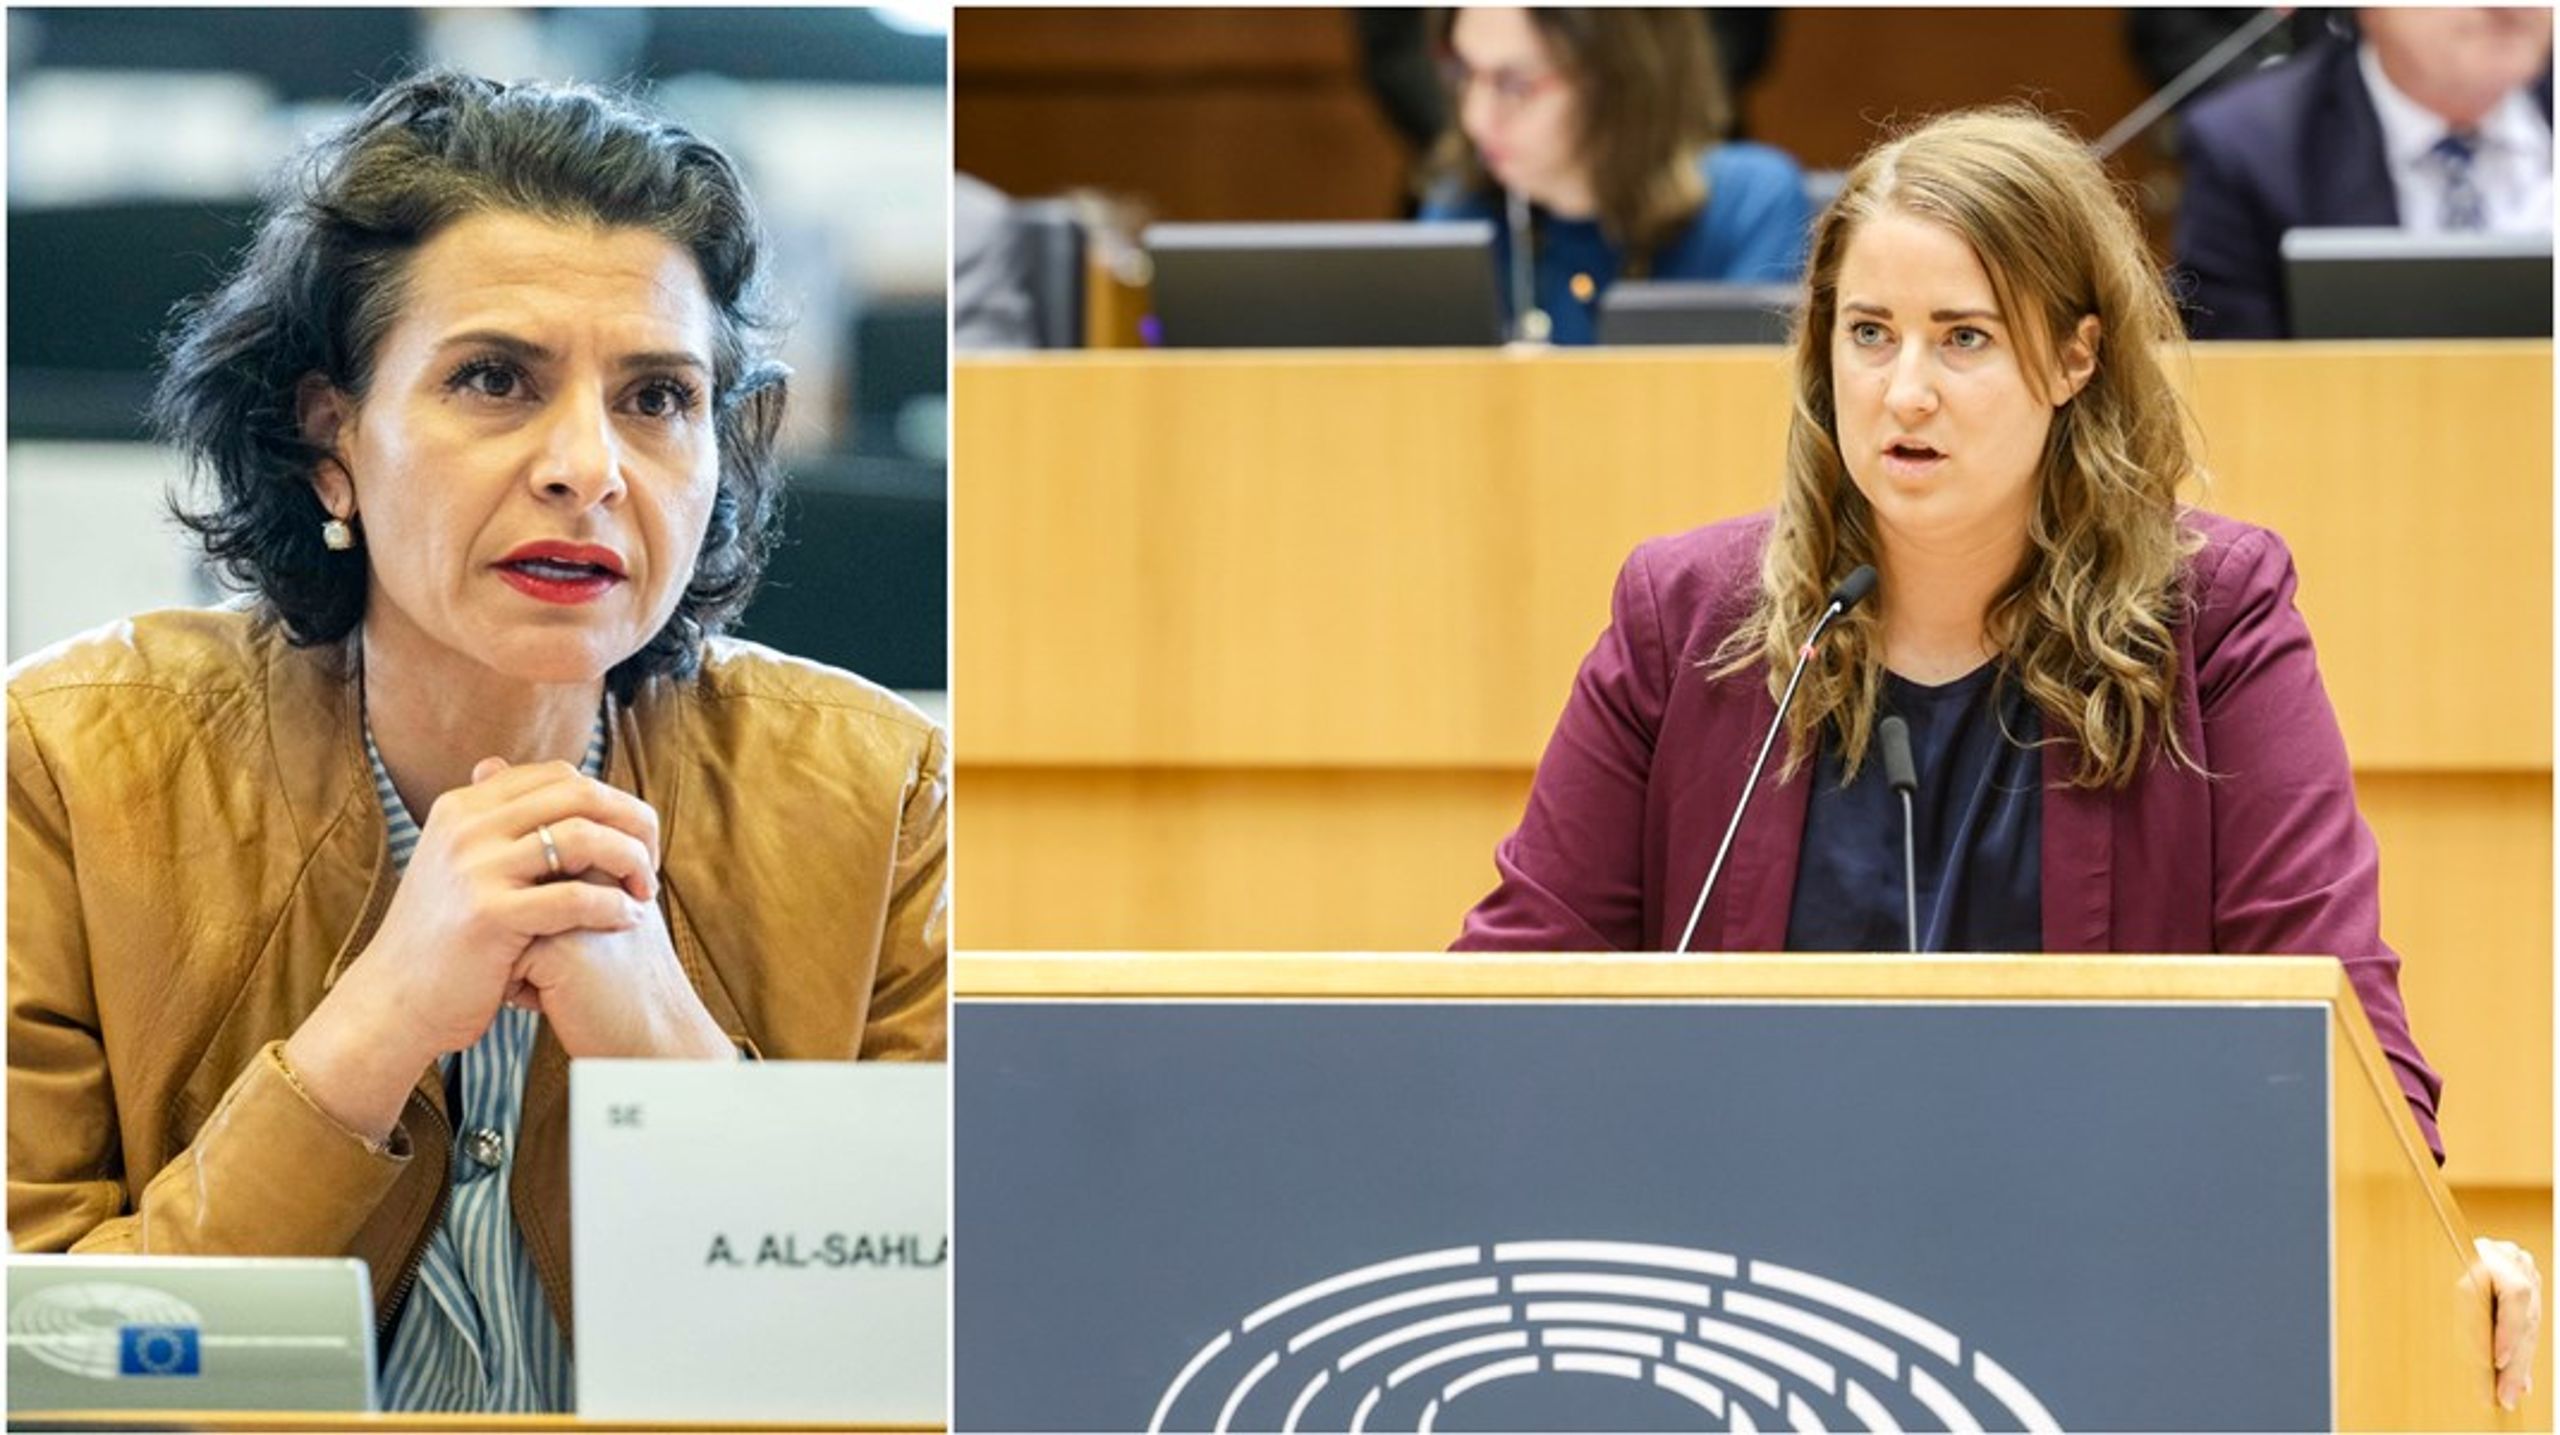 Abir Al-Sahlani valdes in i Europaparlamentet efter valet 2019. Emma Wiesner tog plats i Bryssel först två år senare, när Fredrick Federley lämnade. Båda kandiderar för omval.